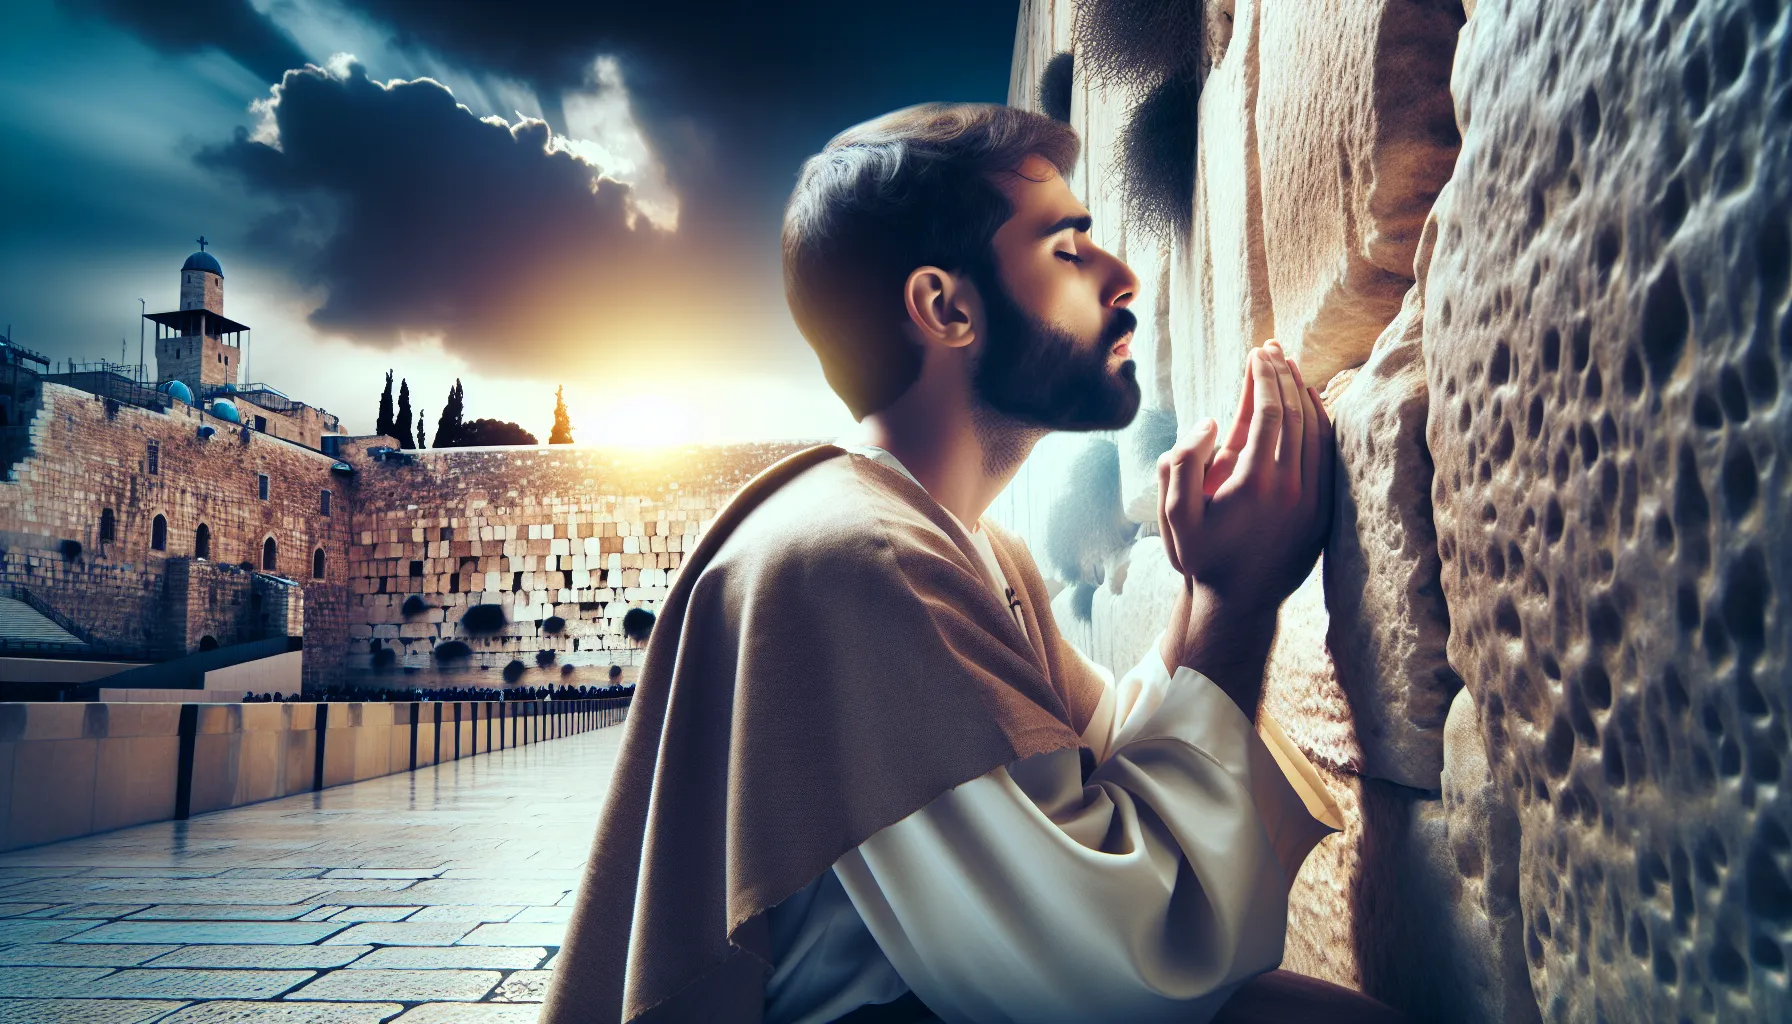 Imagen de una persona cristiana orando frente al Muro de los Lamentos en Jerusalén